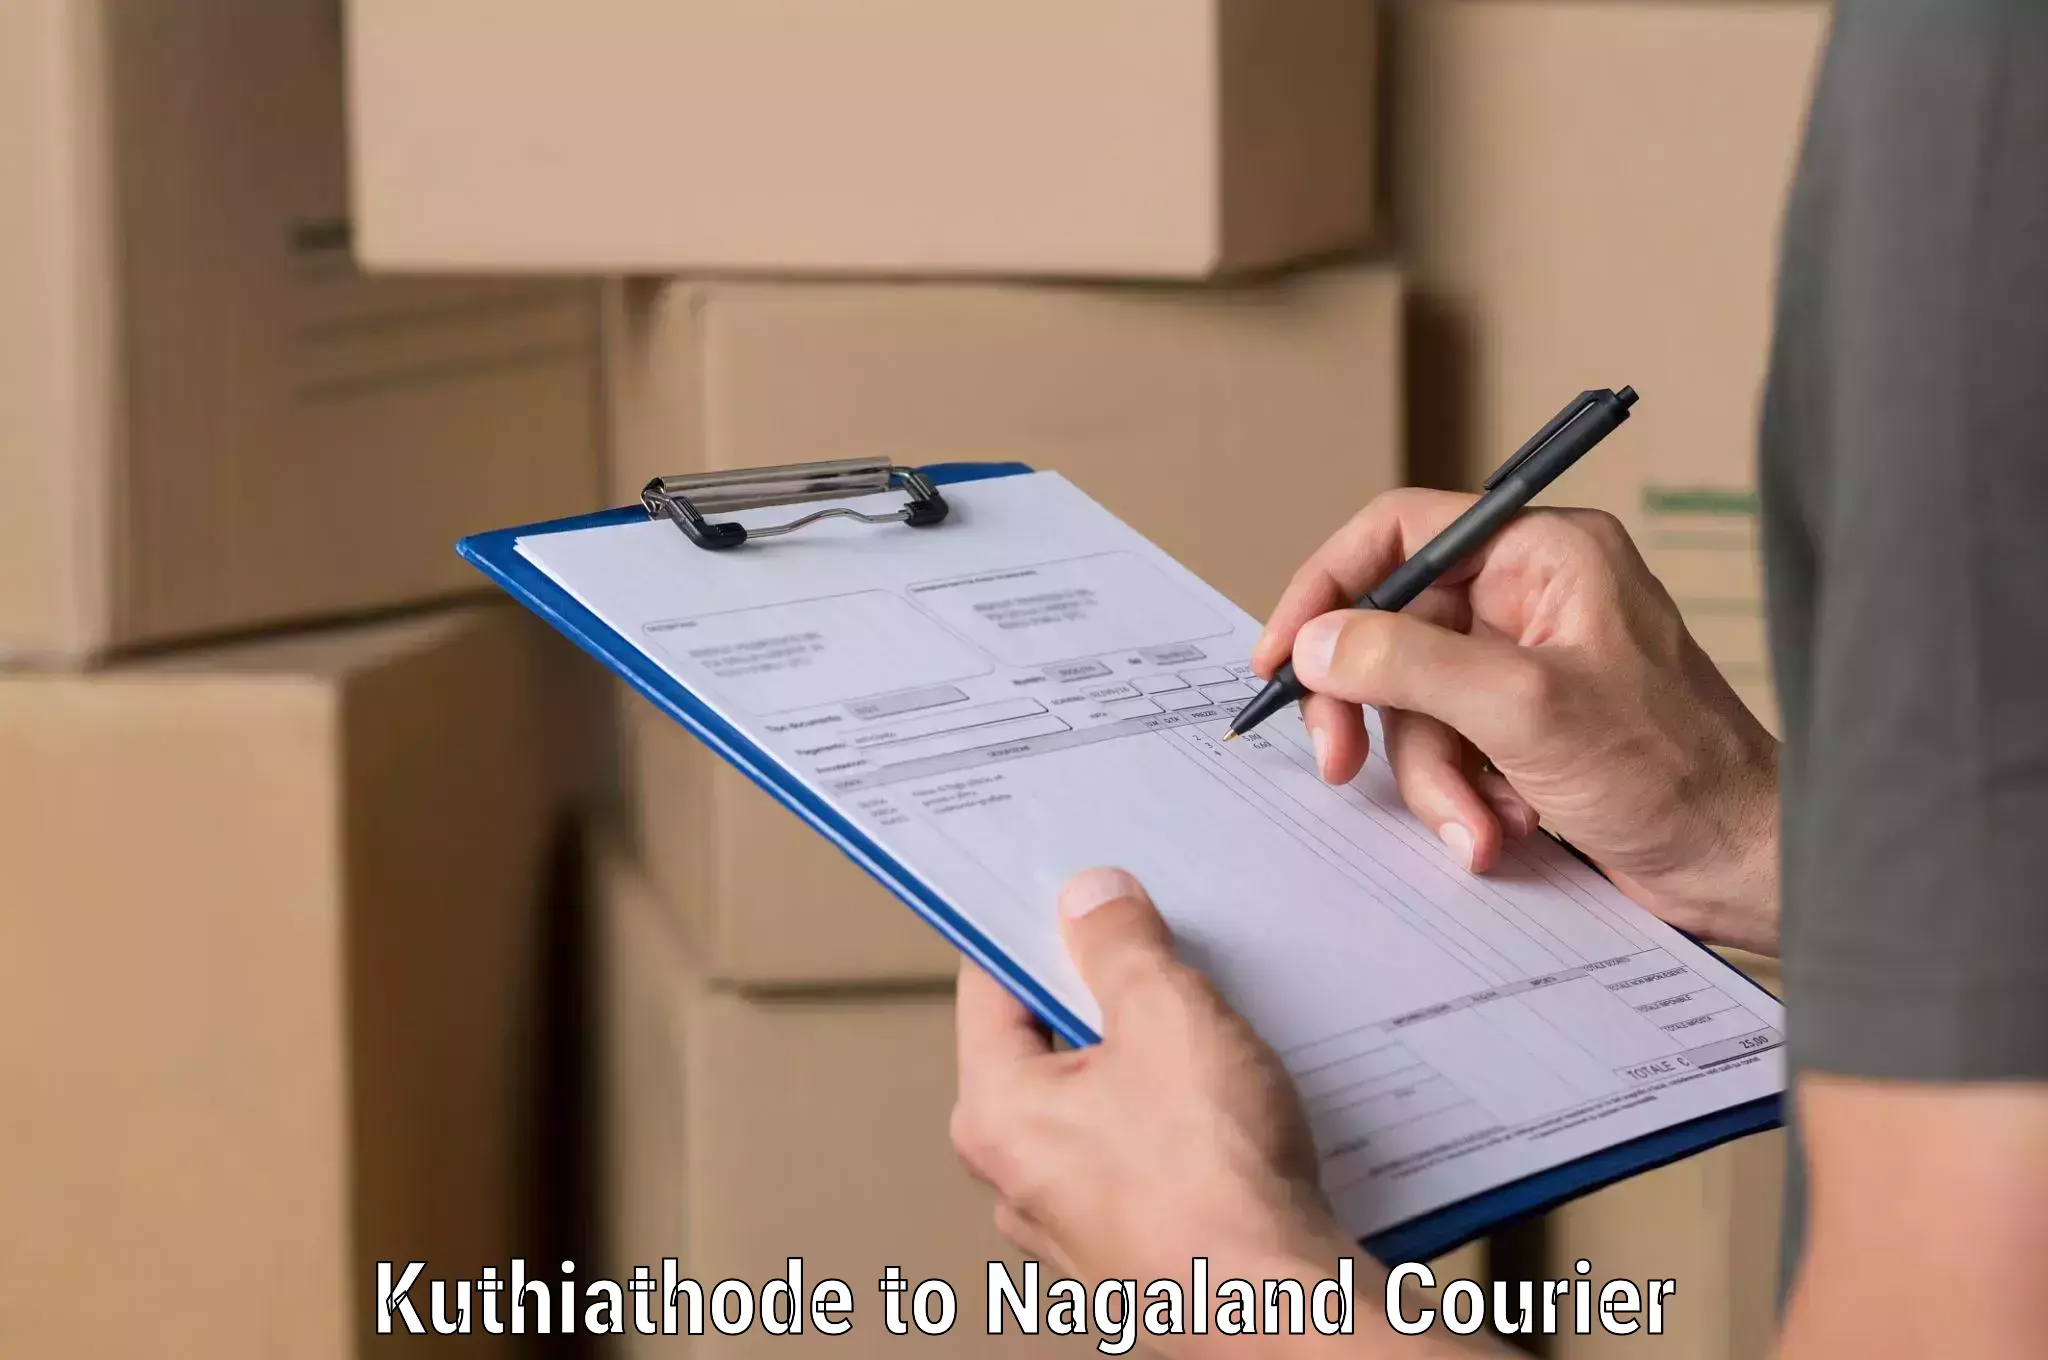 Courier service comparison Kuthiathode to NIT Nagaland